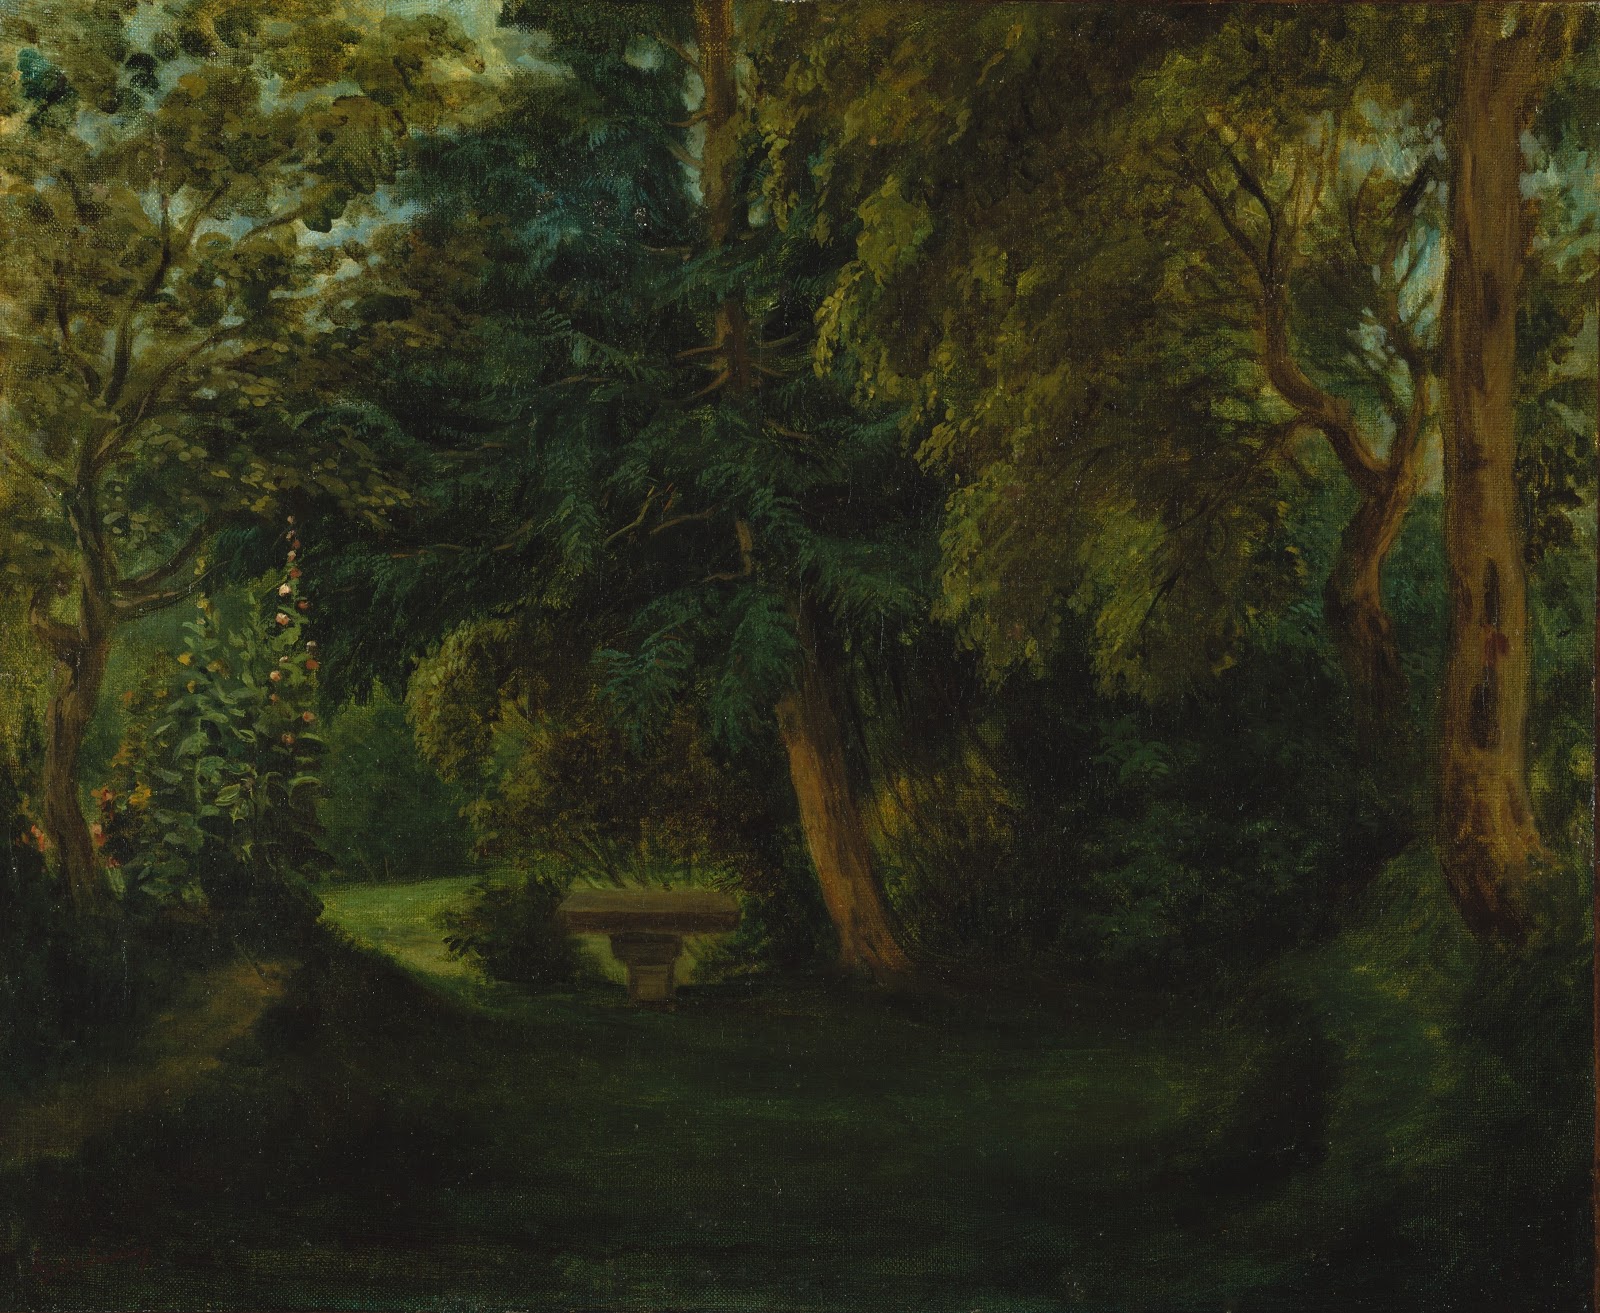 Eugene+Delacroix-1798-1863 (124).jpg